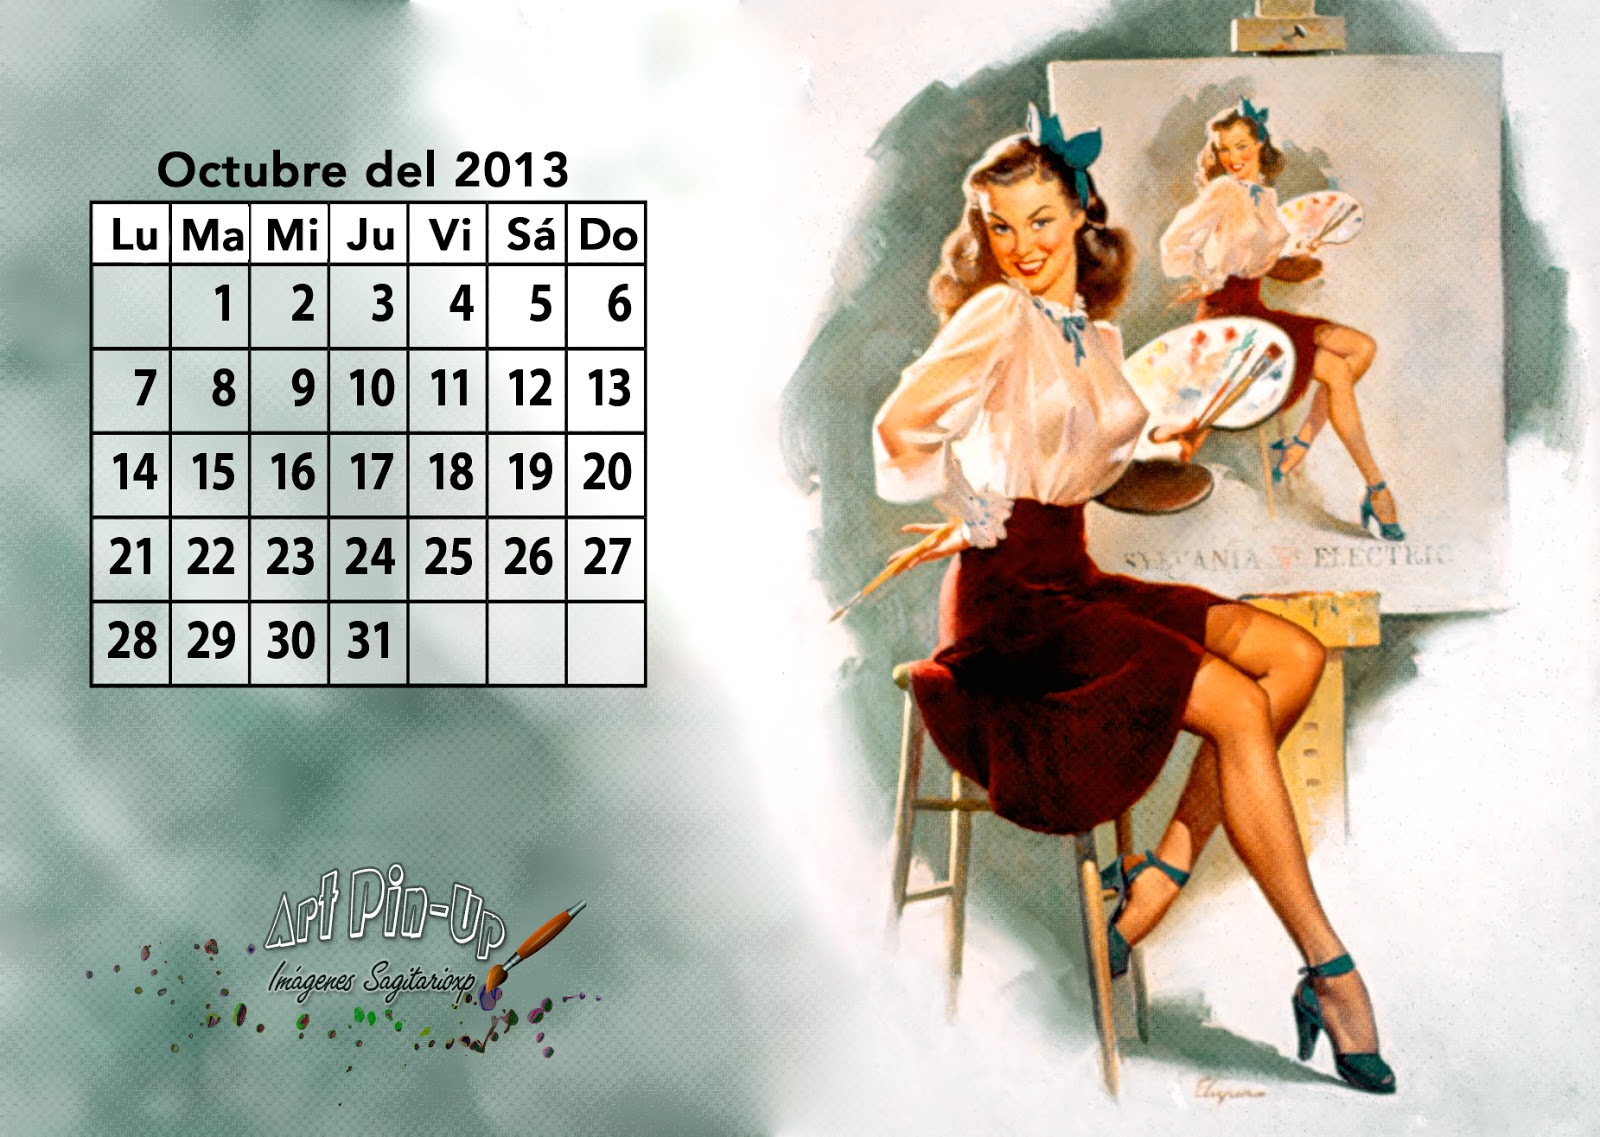 Calendario vintage pin-up de Gil Elvgren del mes de Octubre del 2013.